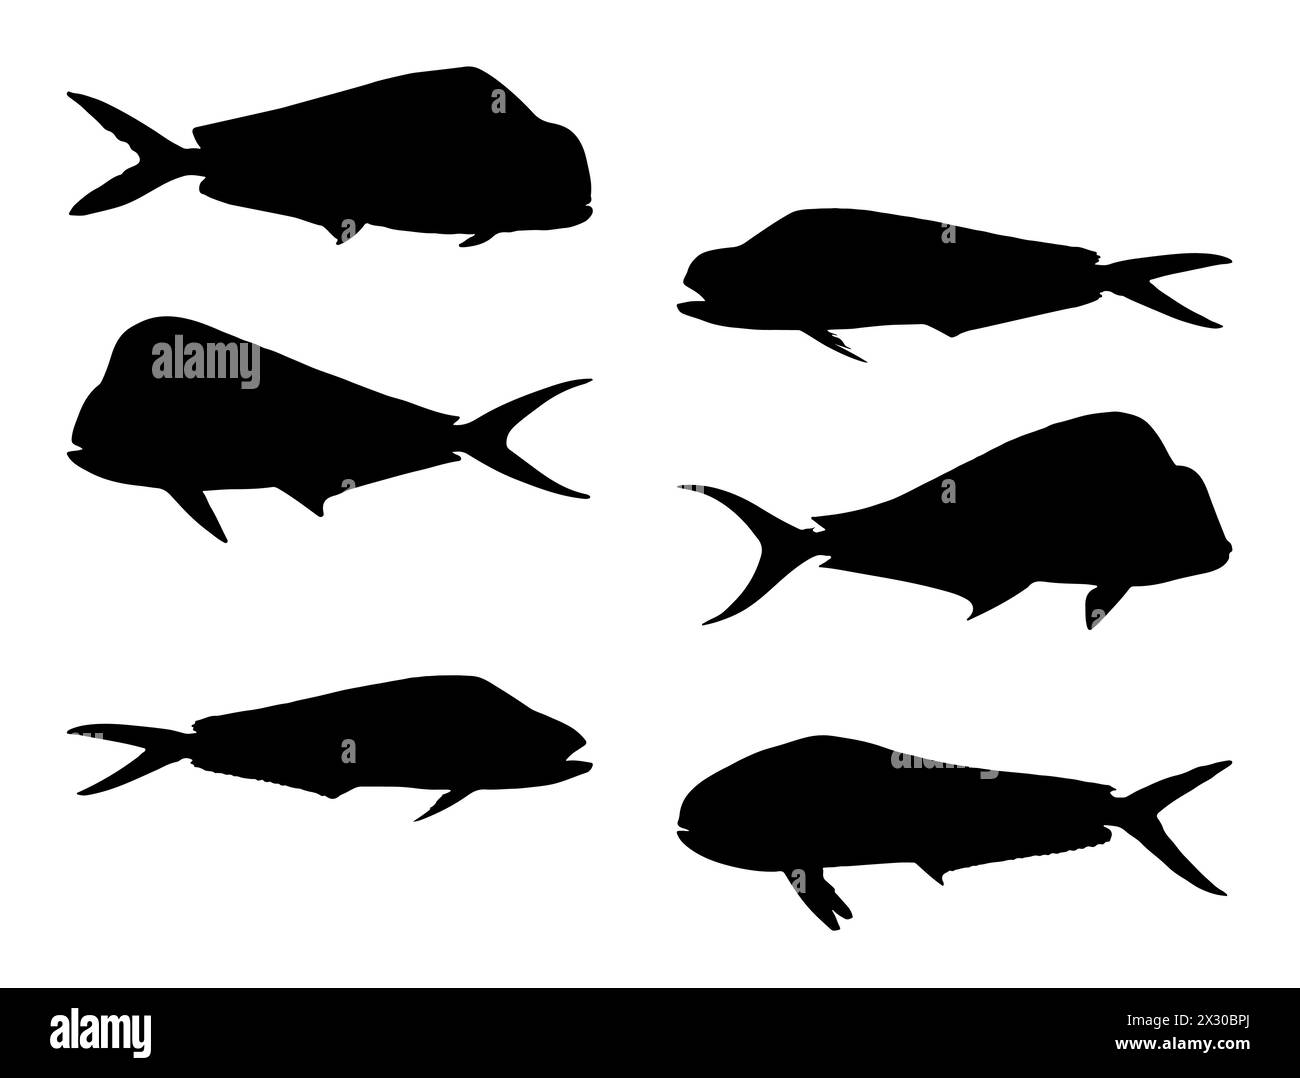 Mahi mahi fish silhouette vector art Stock Vector